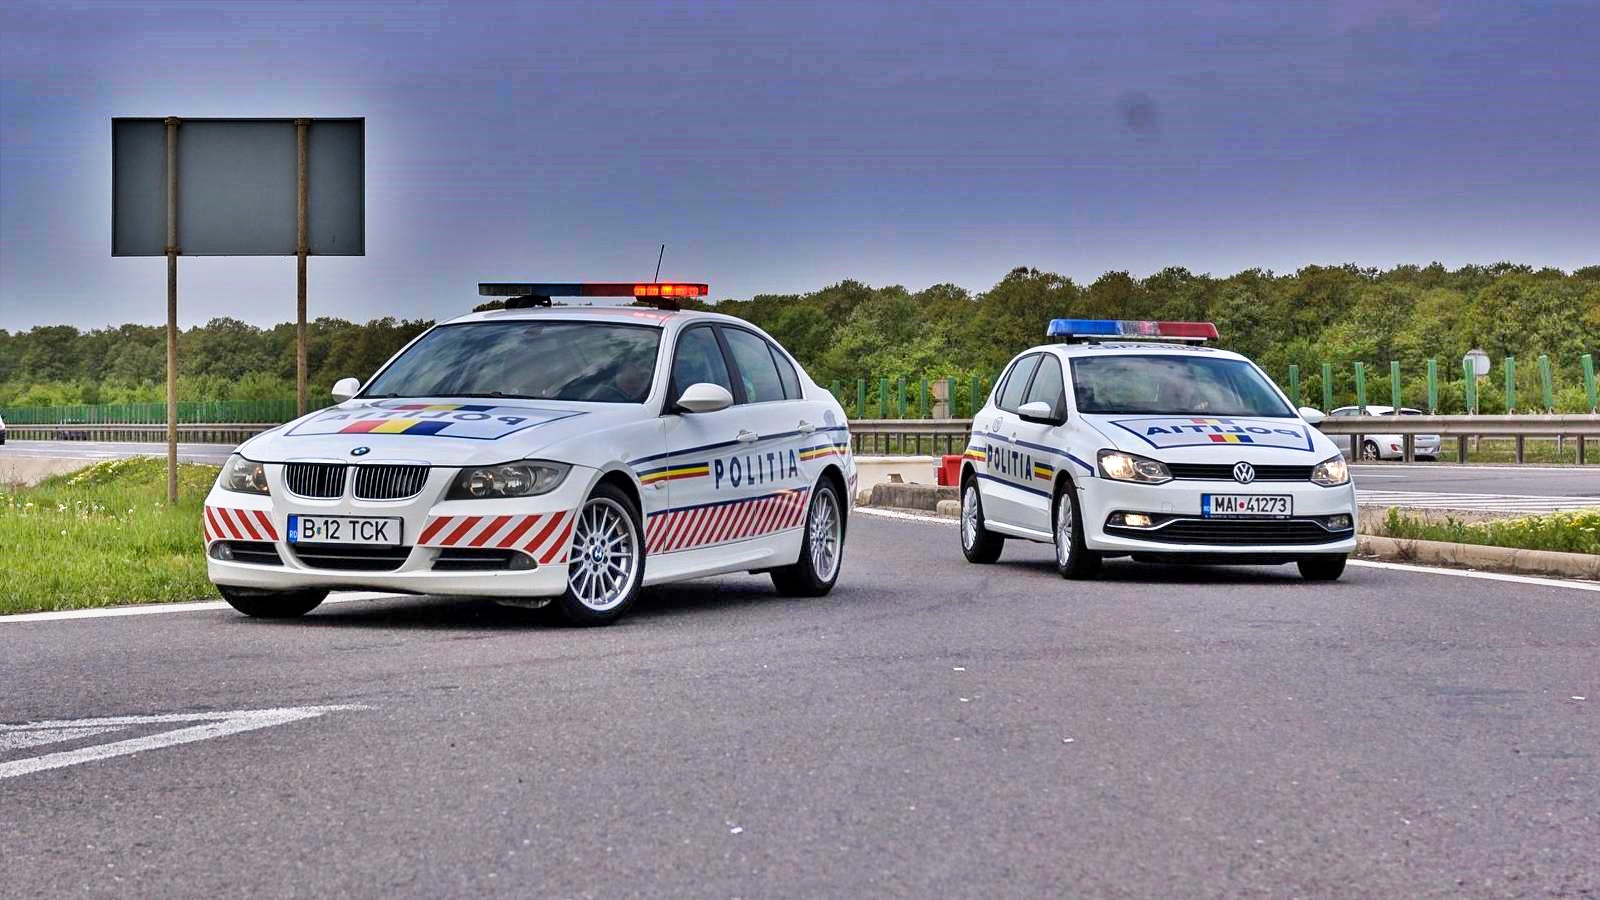 Rumänsk polis VARNING angående bilbedrägeri